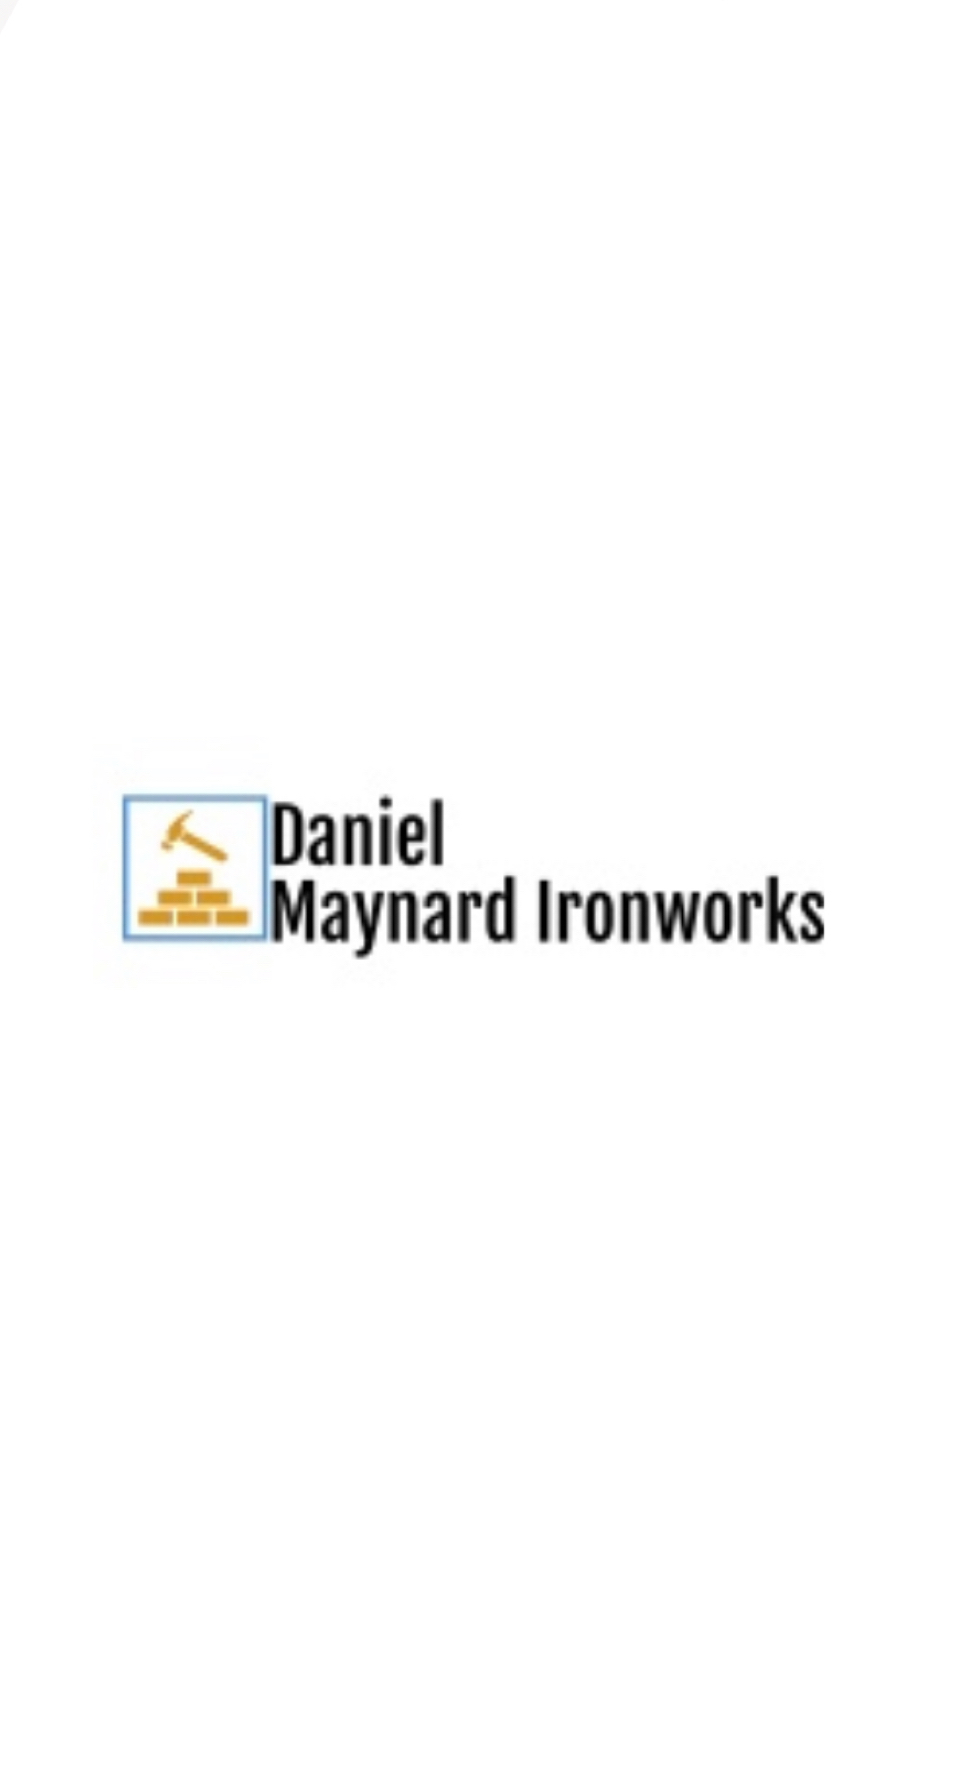 Daniel Maynard Ironworks-logo.jpg